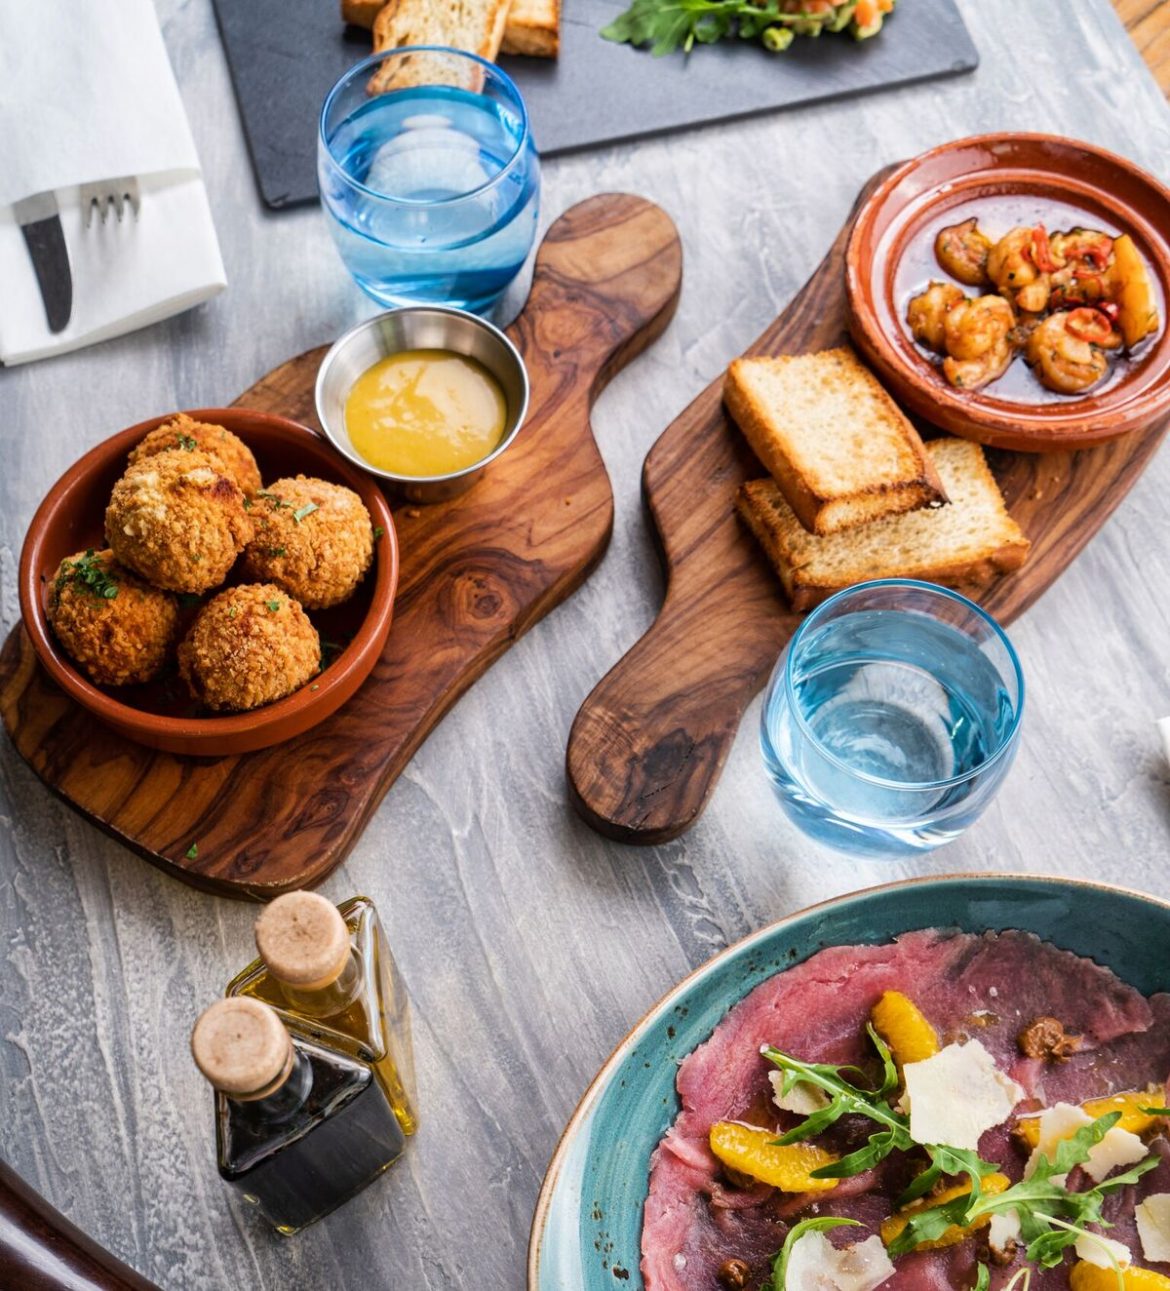 مطعم ريفا يطلق قائمة طعام جديدة لموسم الصيف 2019